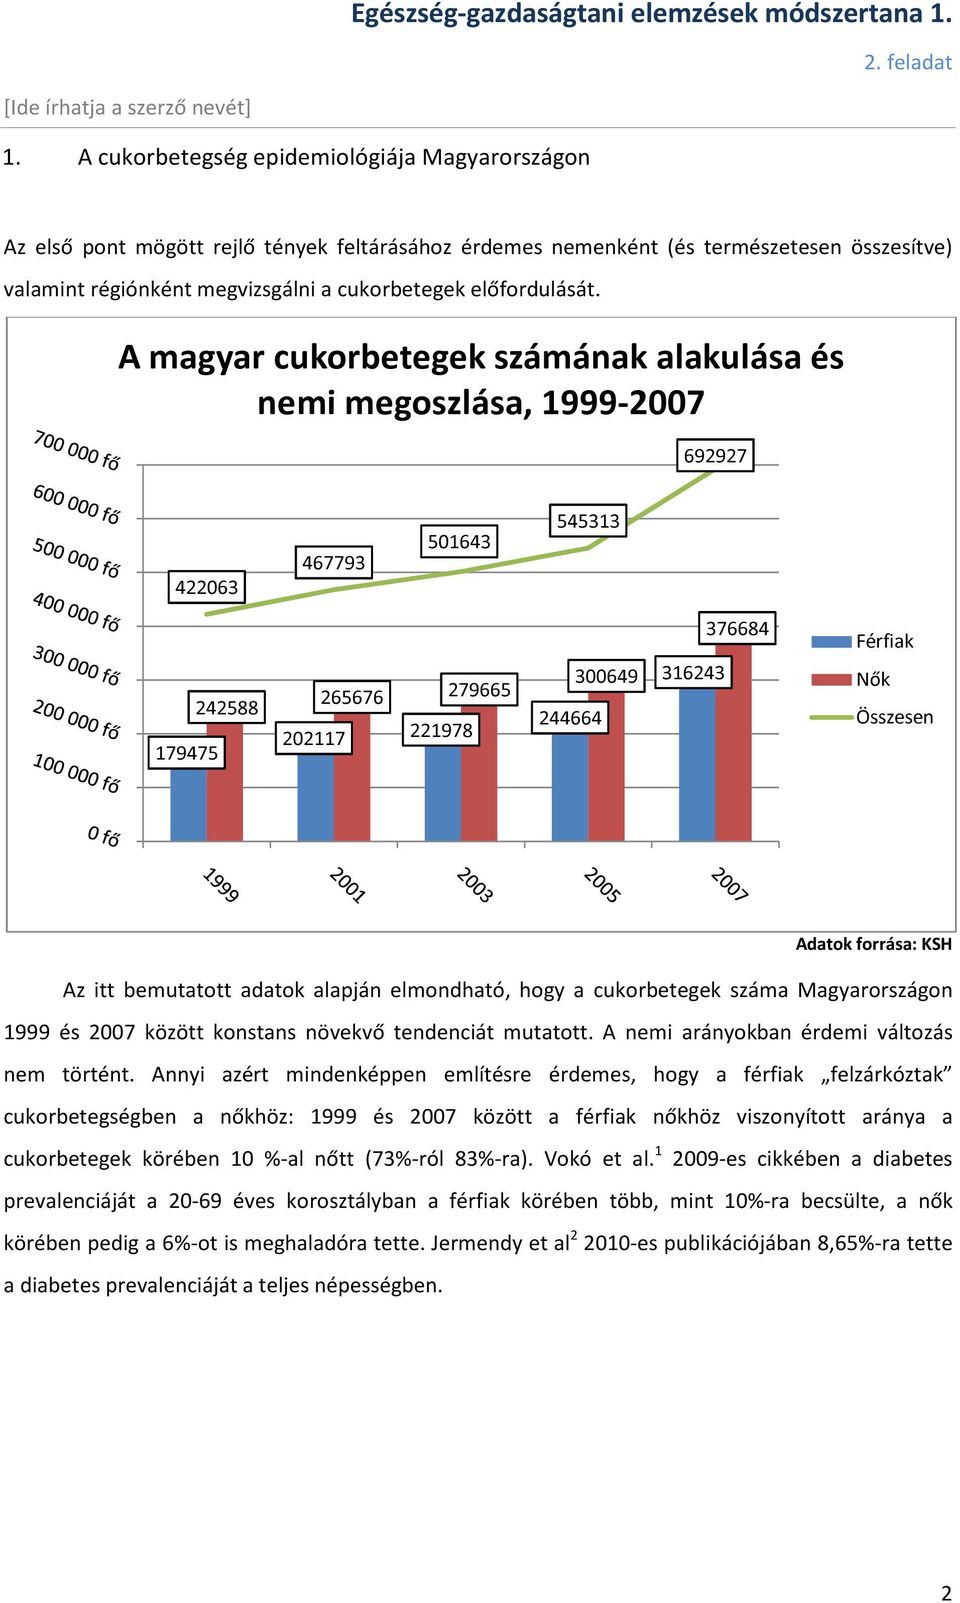 Megduplázódott a cukorbetegek száma Magyarországon